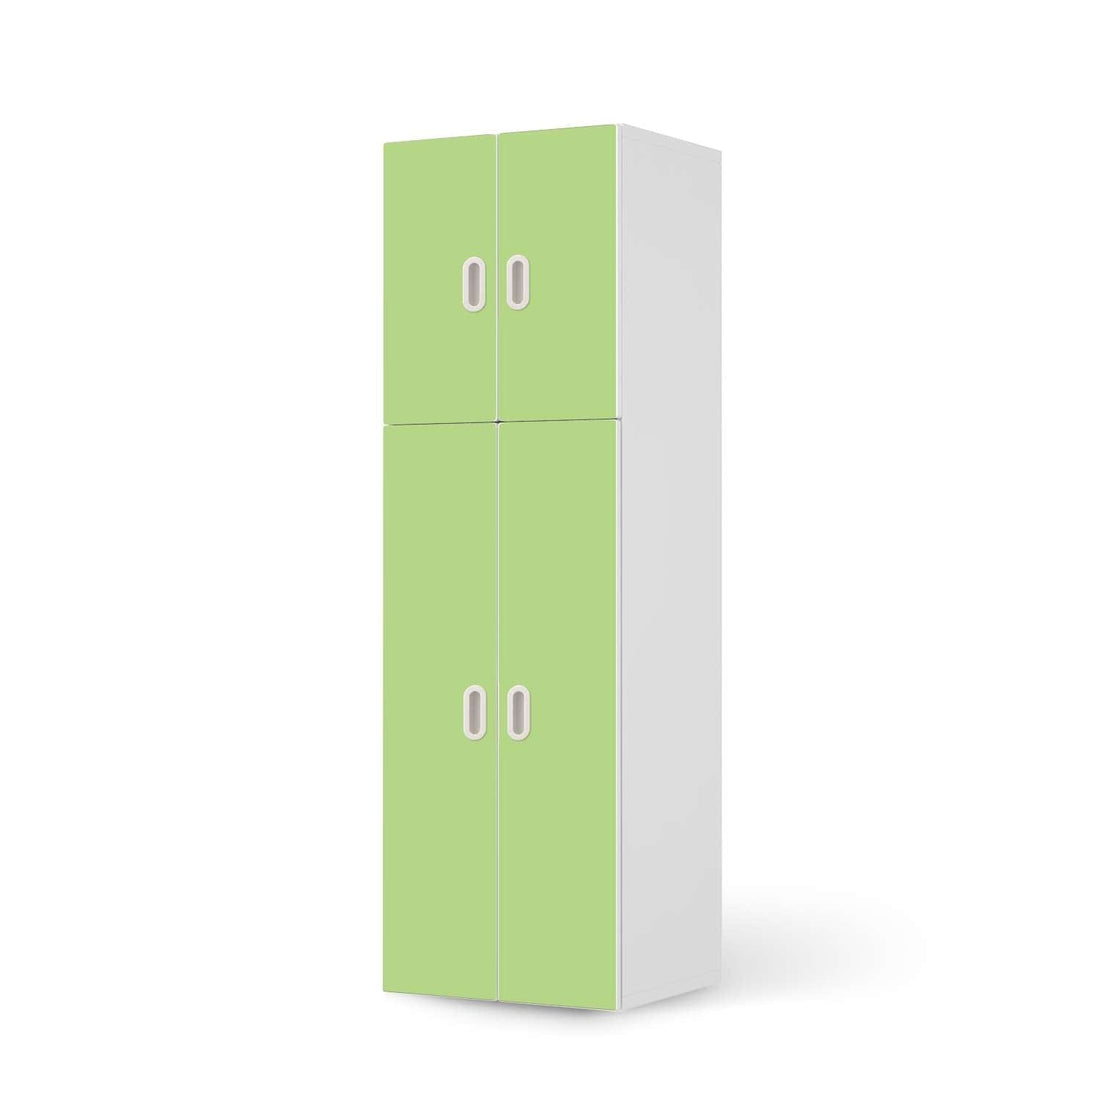 Selbstklebende Folie Hellgrün Light - IKEA Stuva / Fritids kombiniert - 2 große Türen und 2 kleine Türen  - weiss